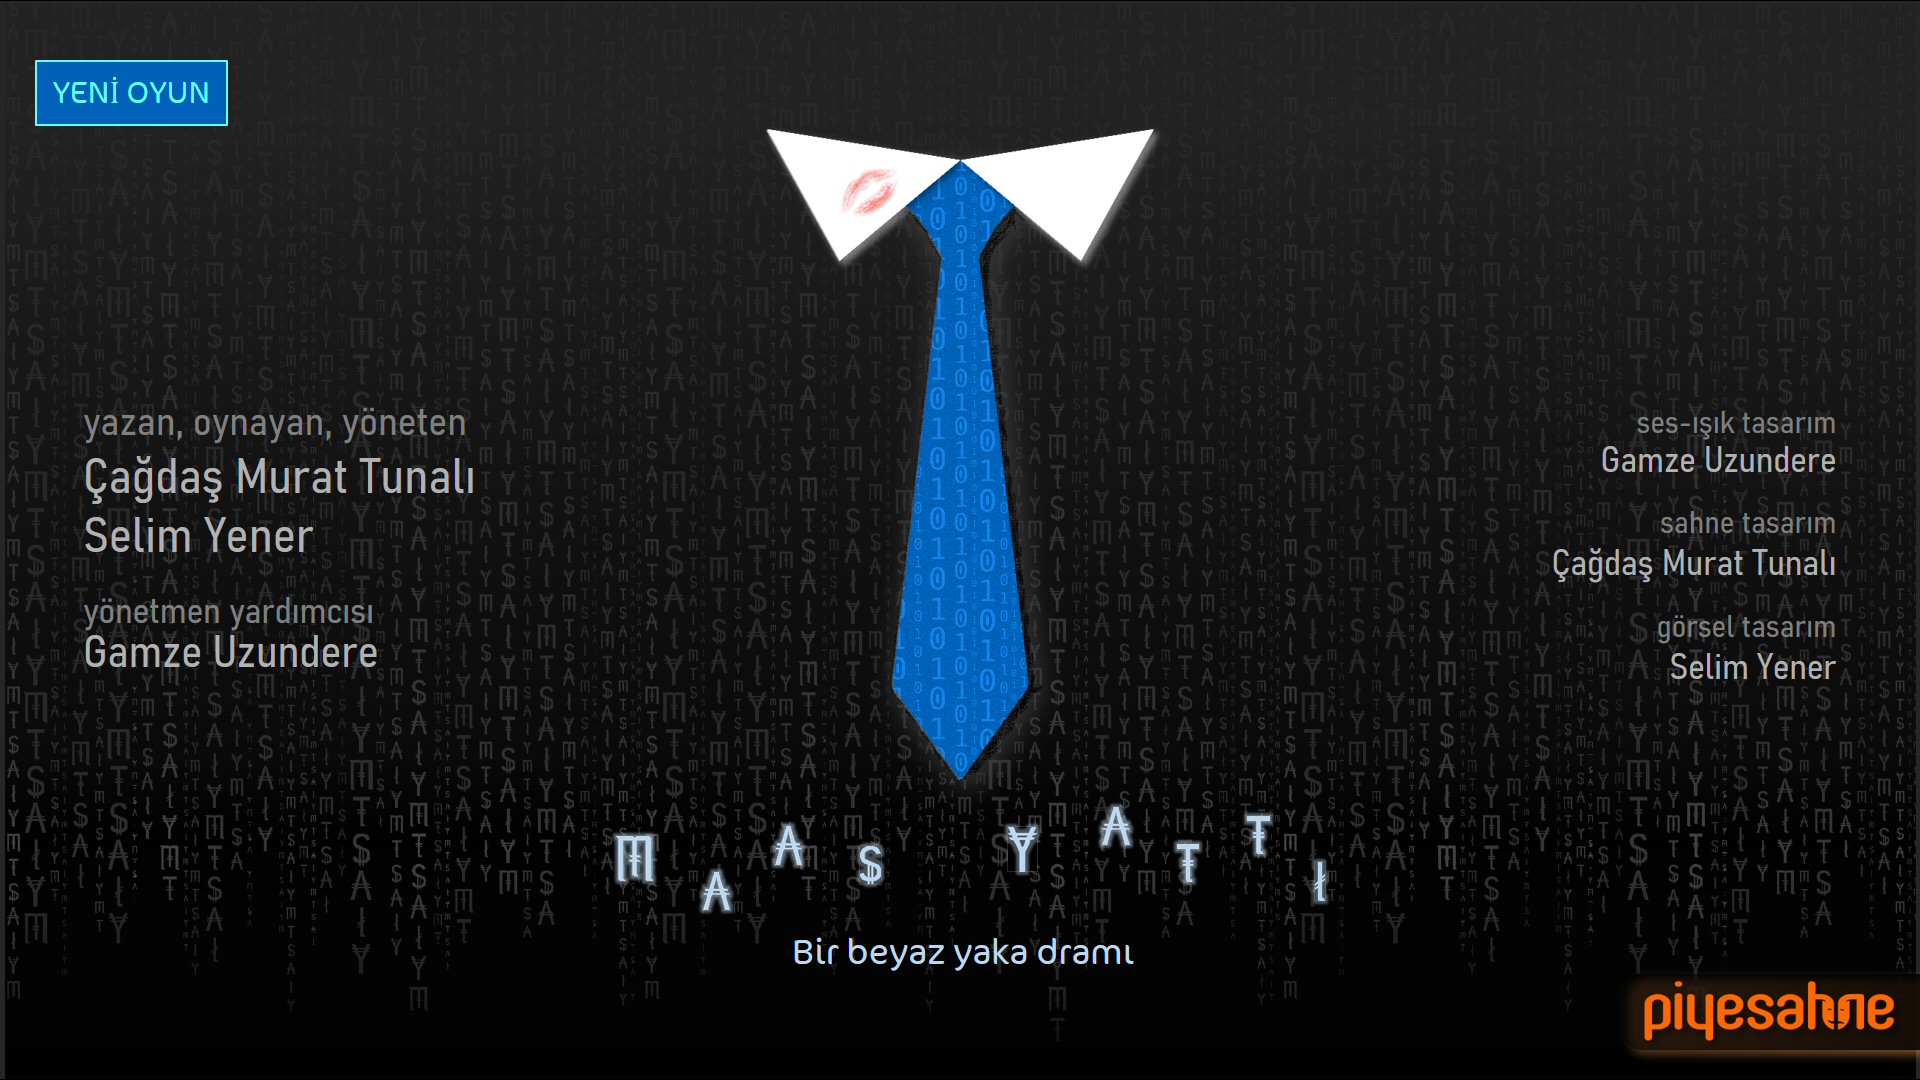 01b-piyesahne-Maas_Yatti-01b